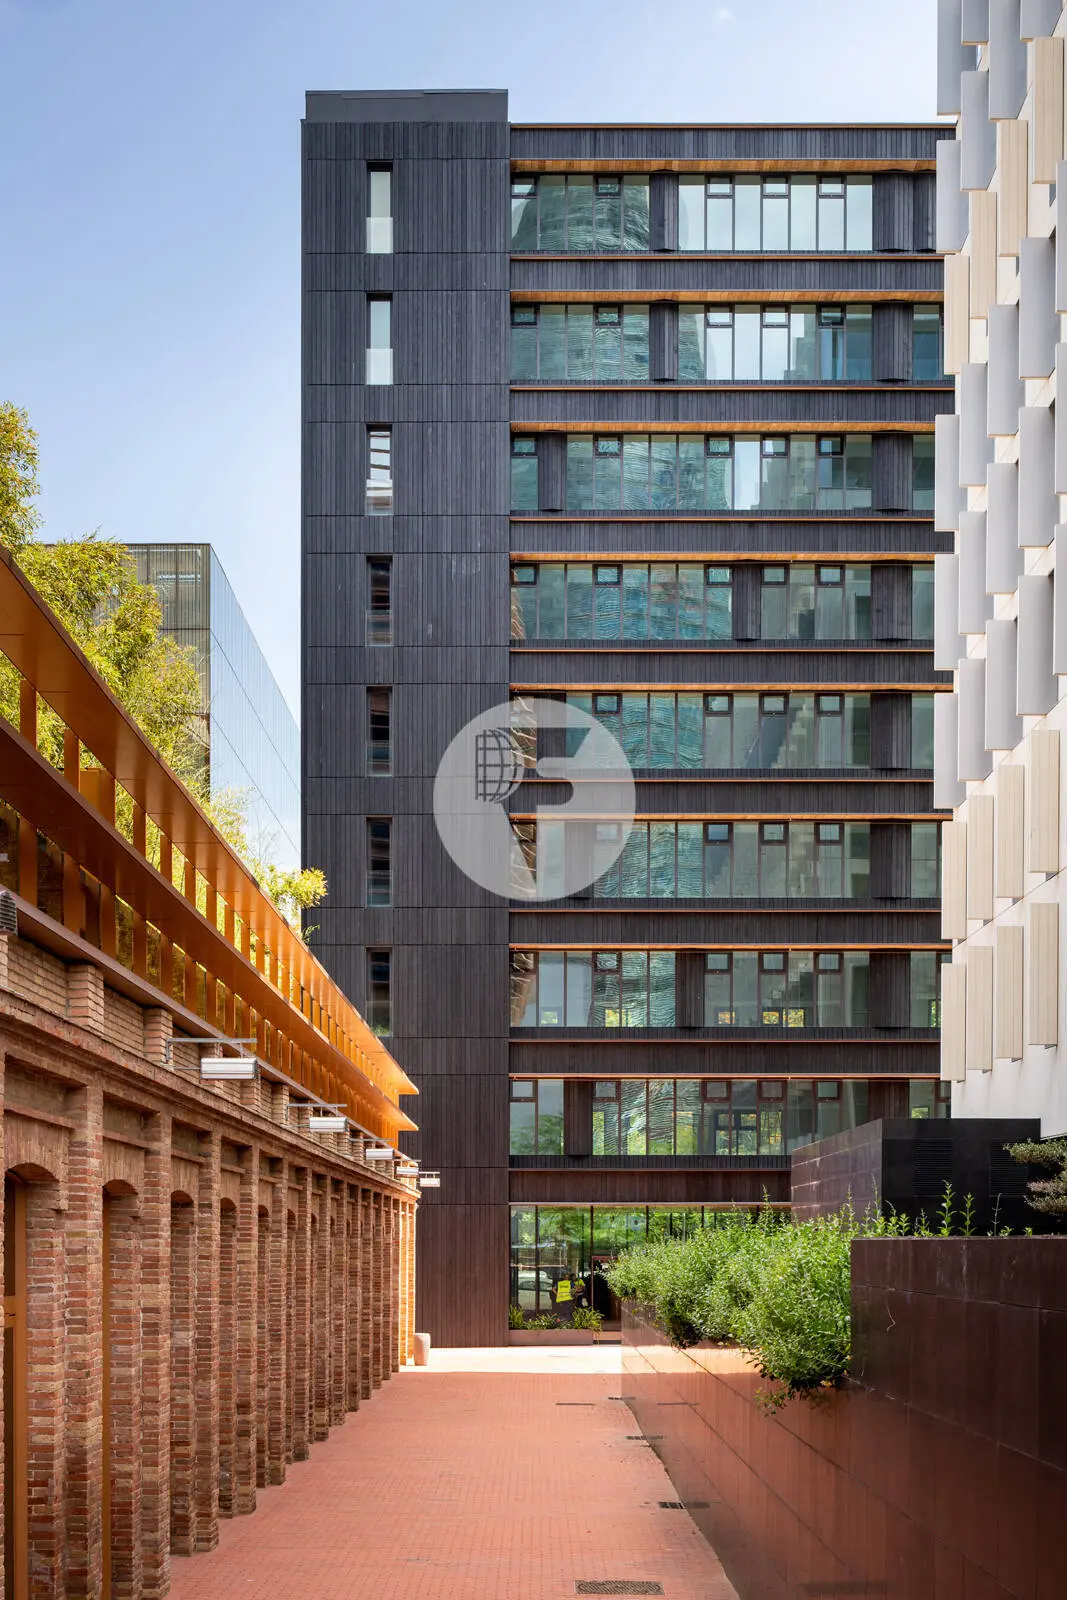 Edifici corporatiu amb terrasses privatives al 22@Barcelona. C. Tanger 18